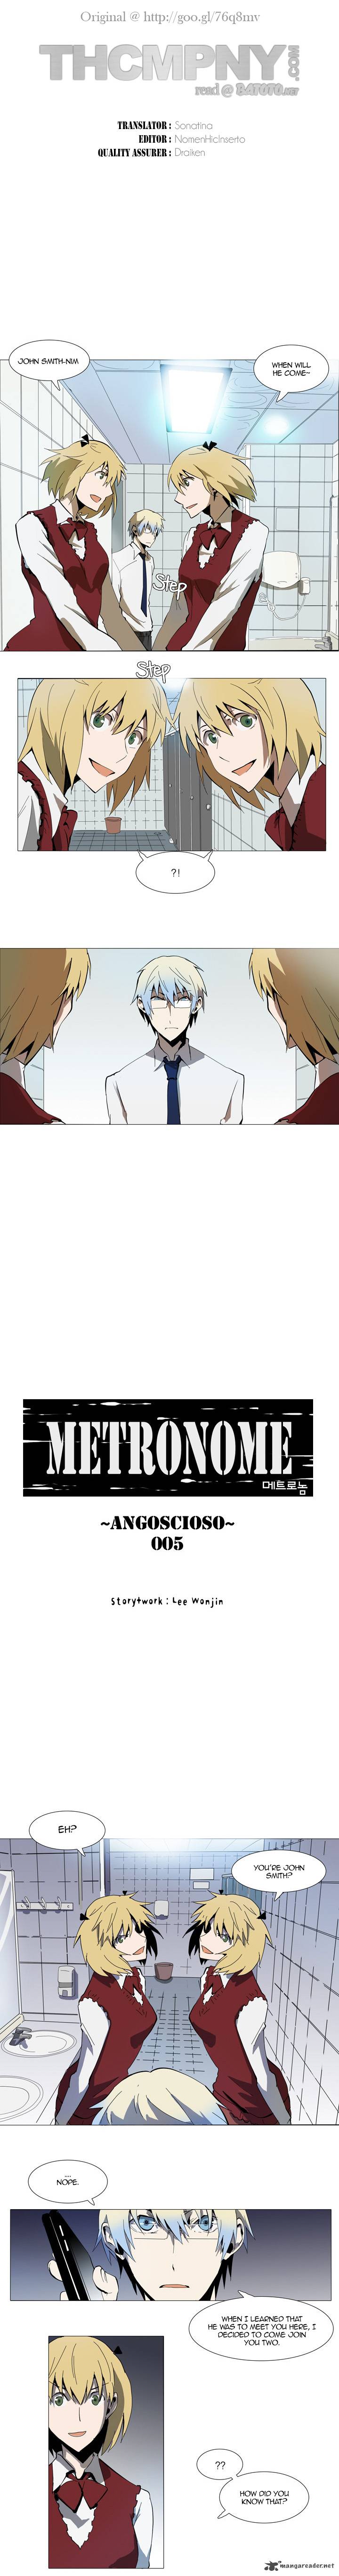 Metronome 19